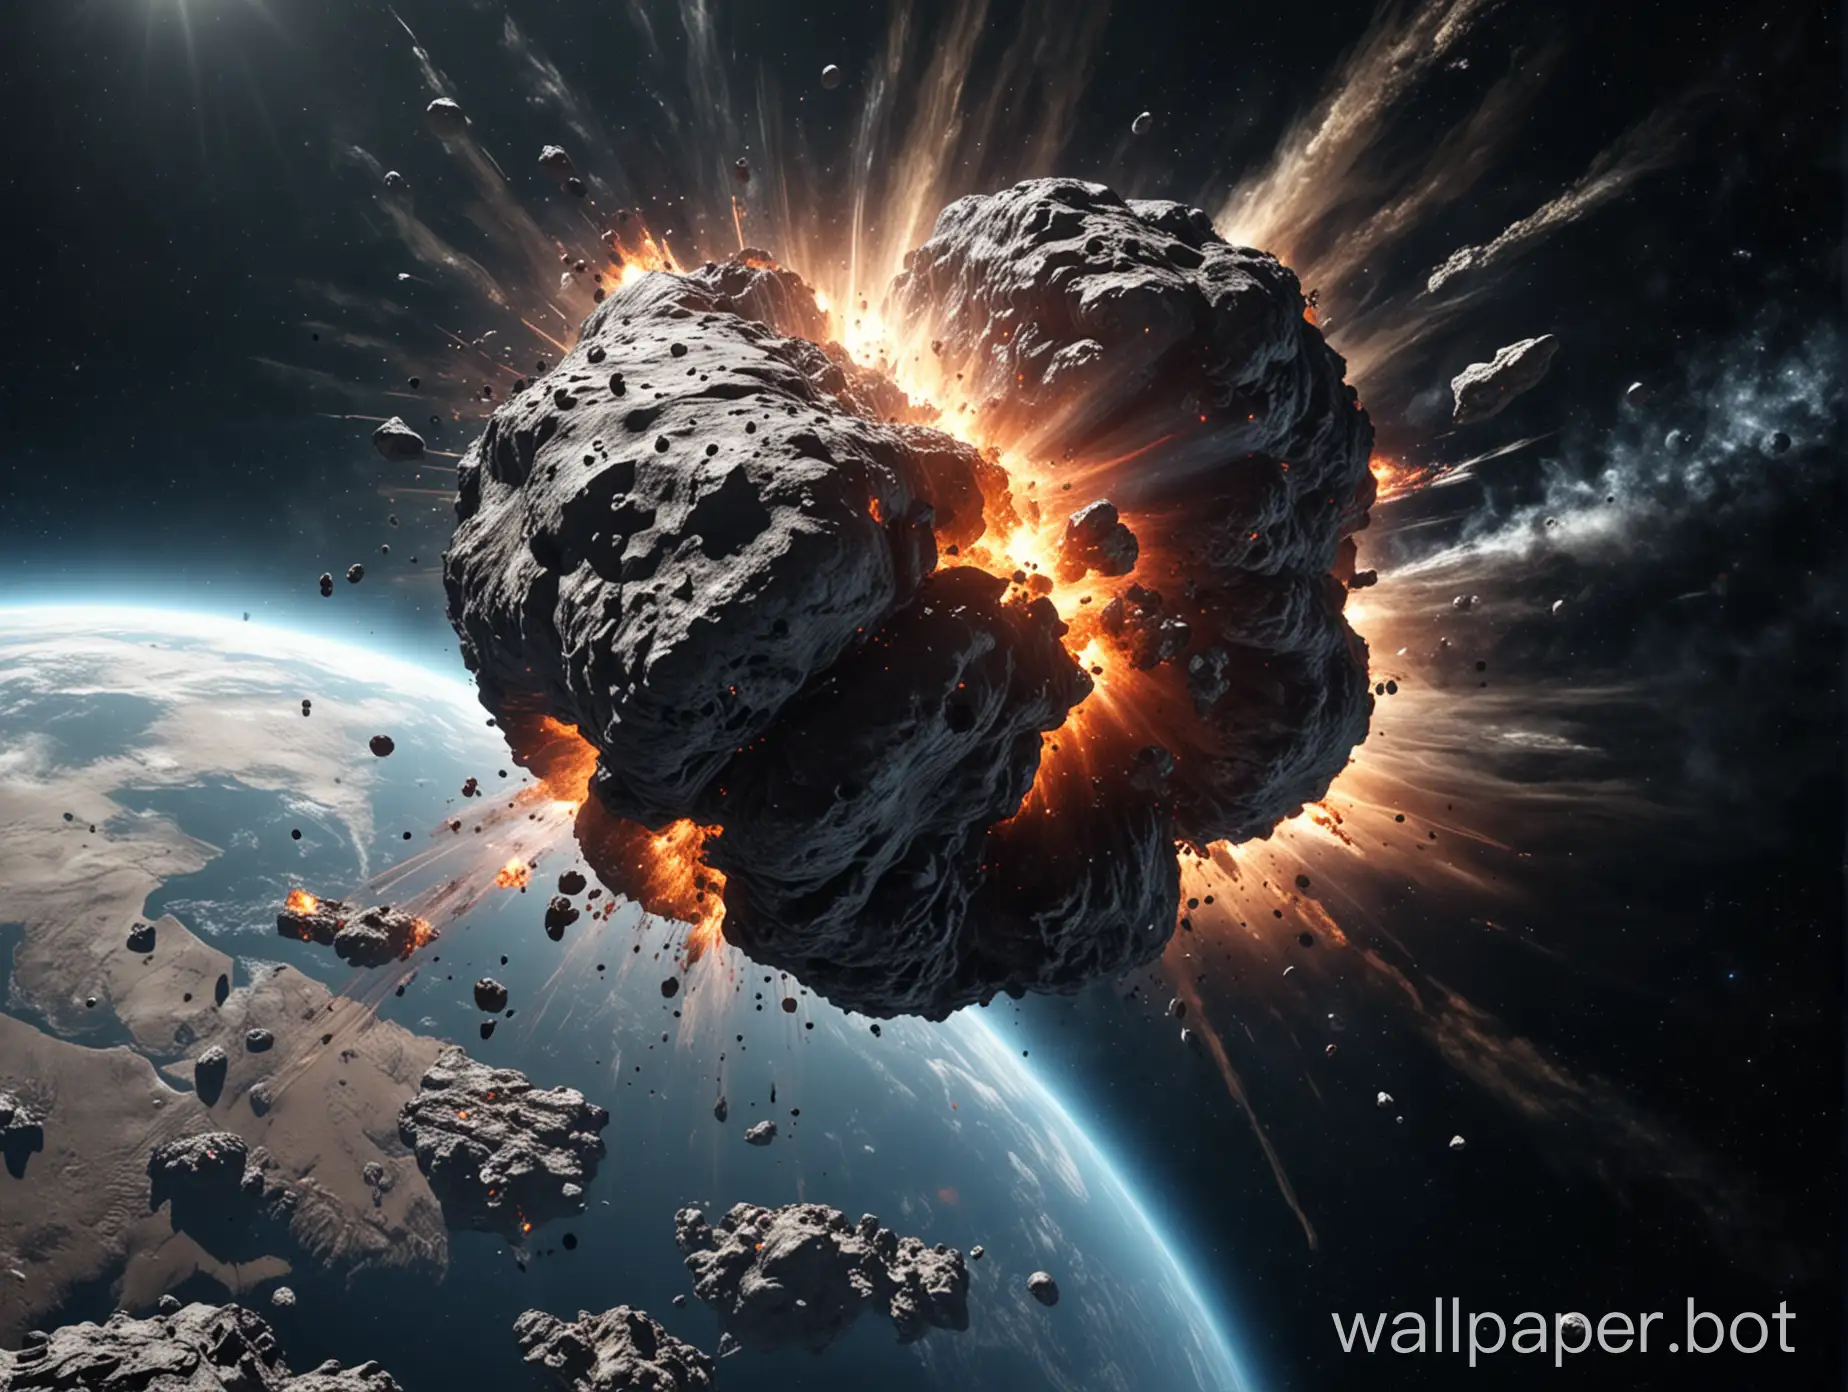 гигантский астероид врезается в землю и раскалывает ее на части, огромный взрыв, вид из космоса с расстояния